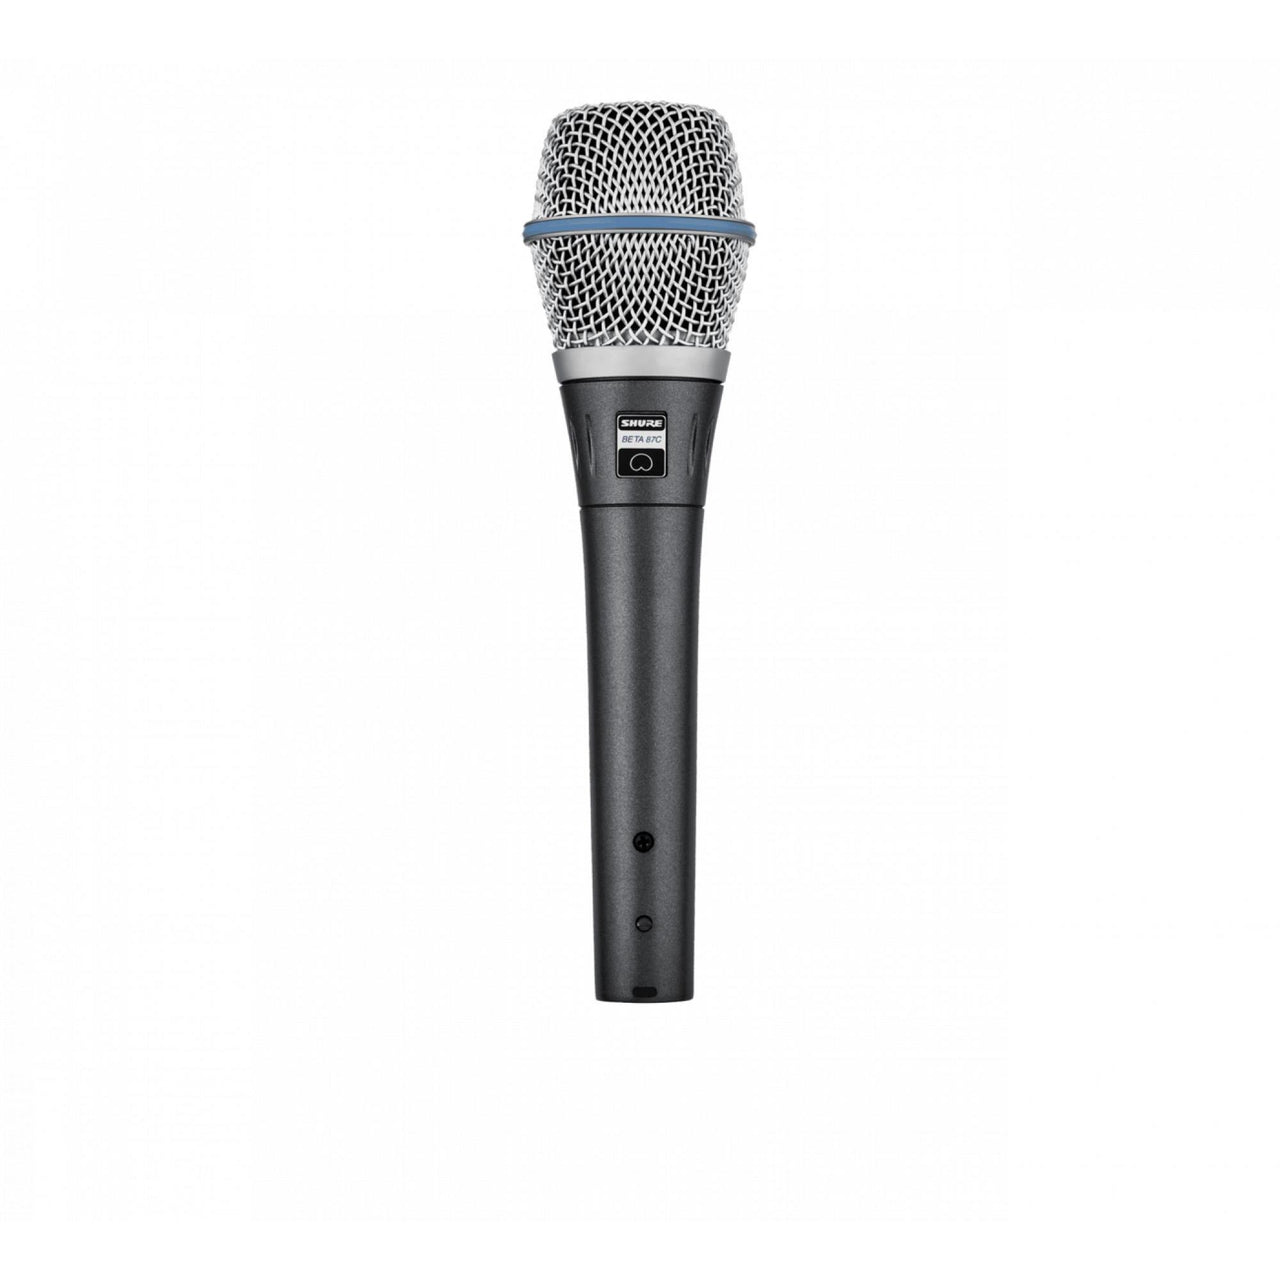 Microfono Shure Condensador Cardioide Beta 87c